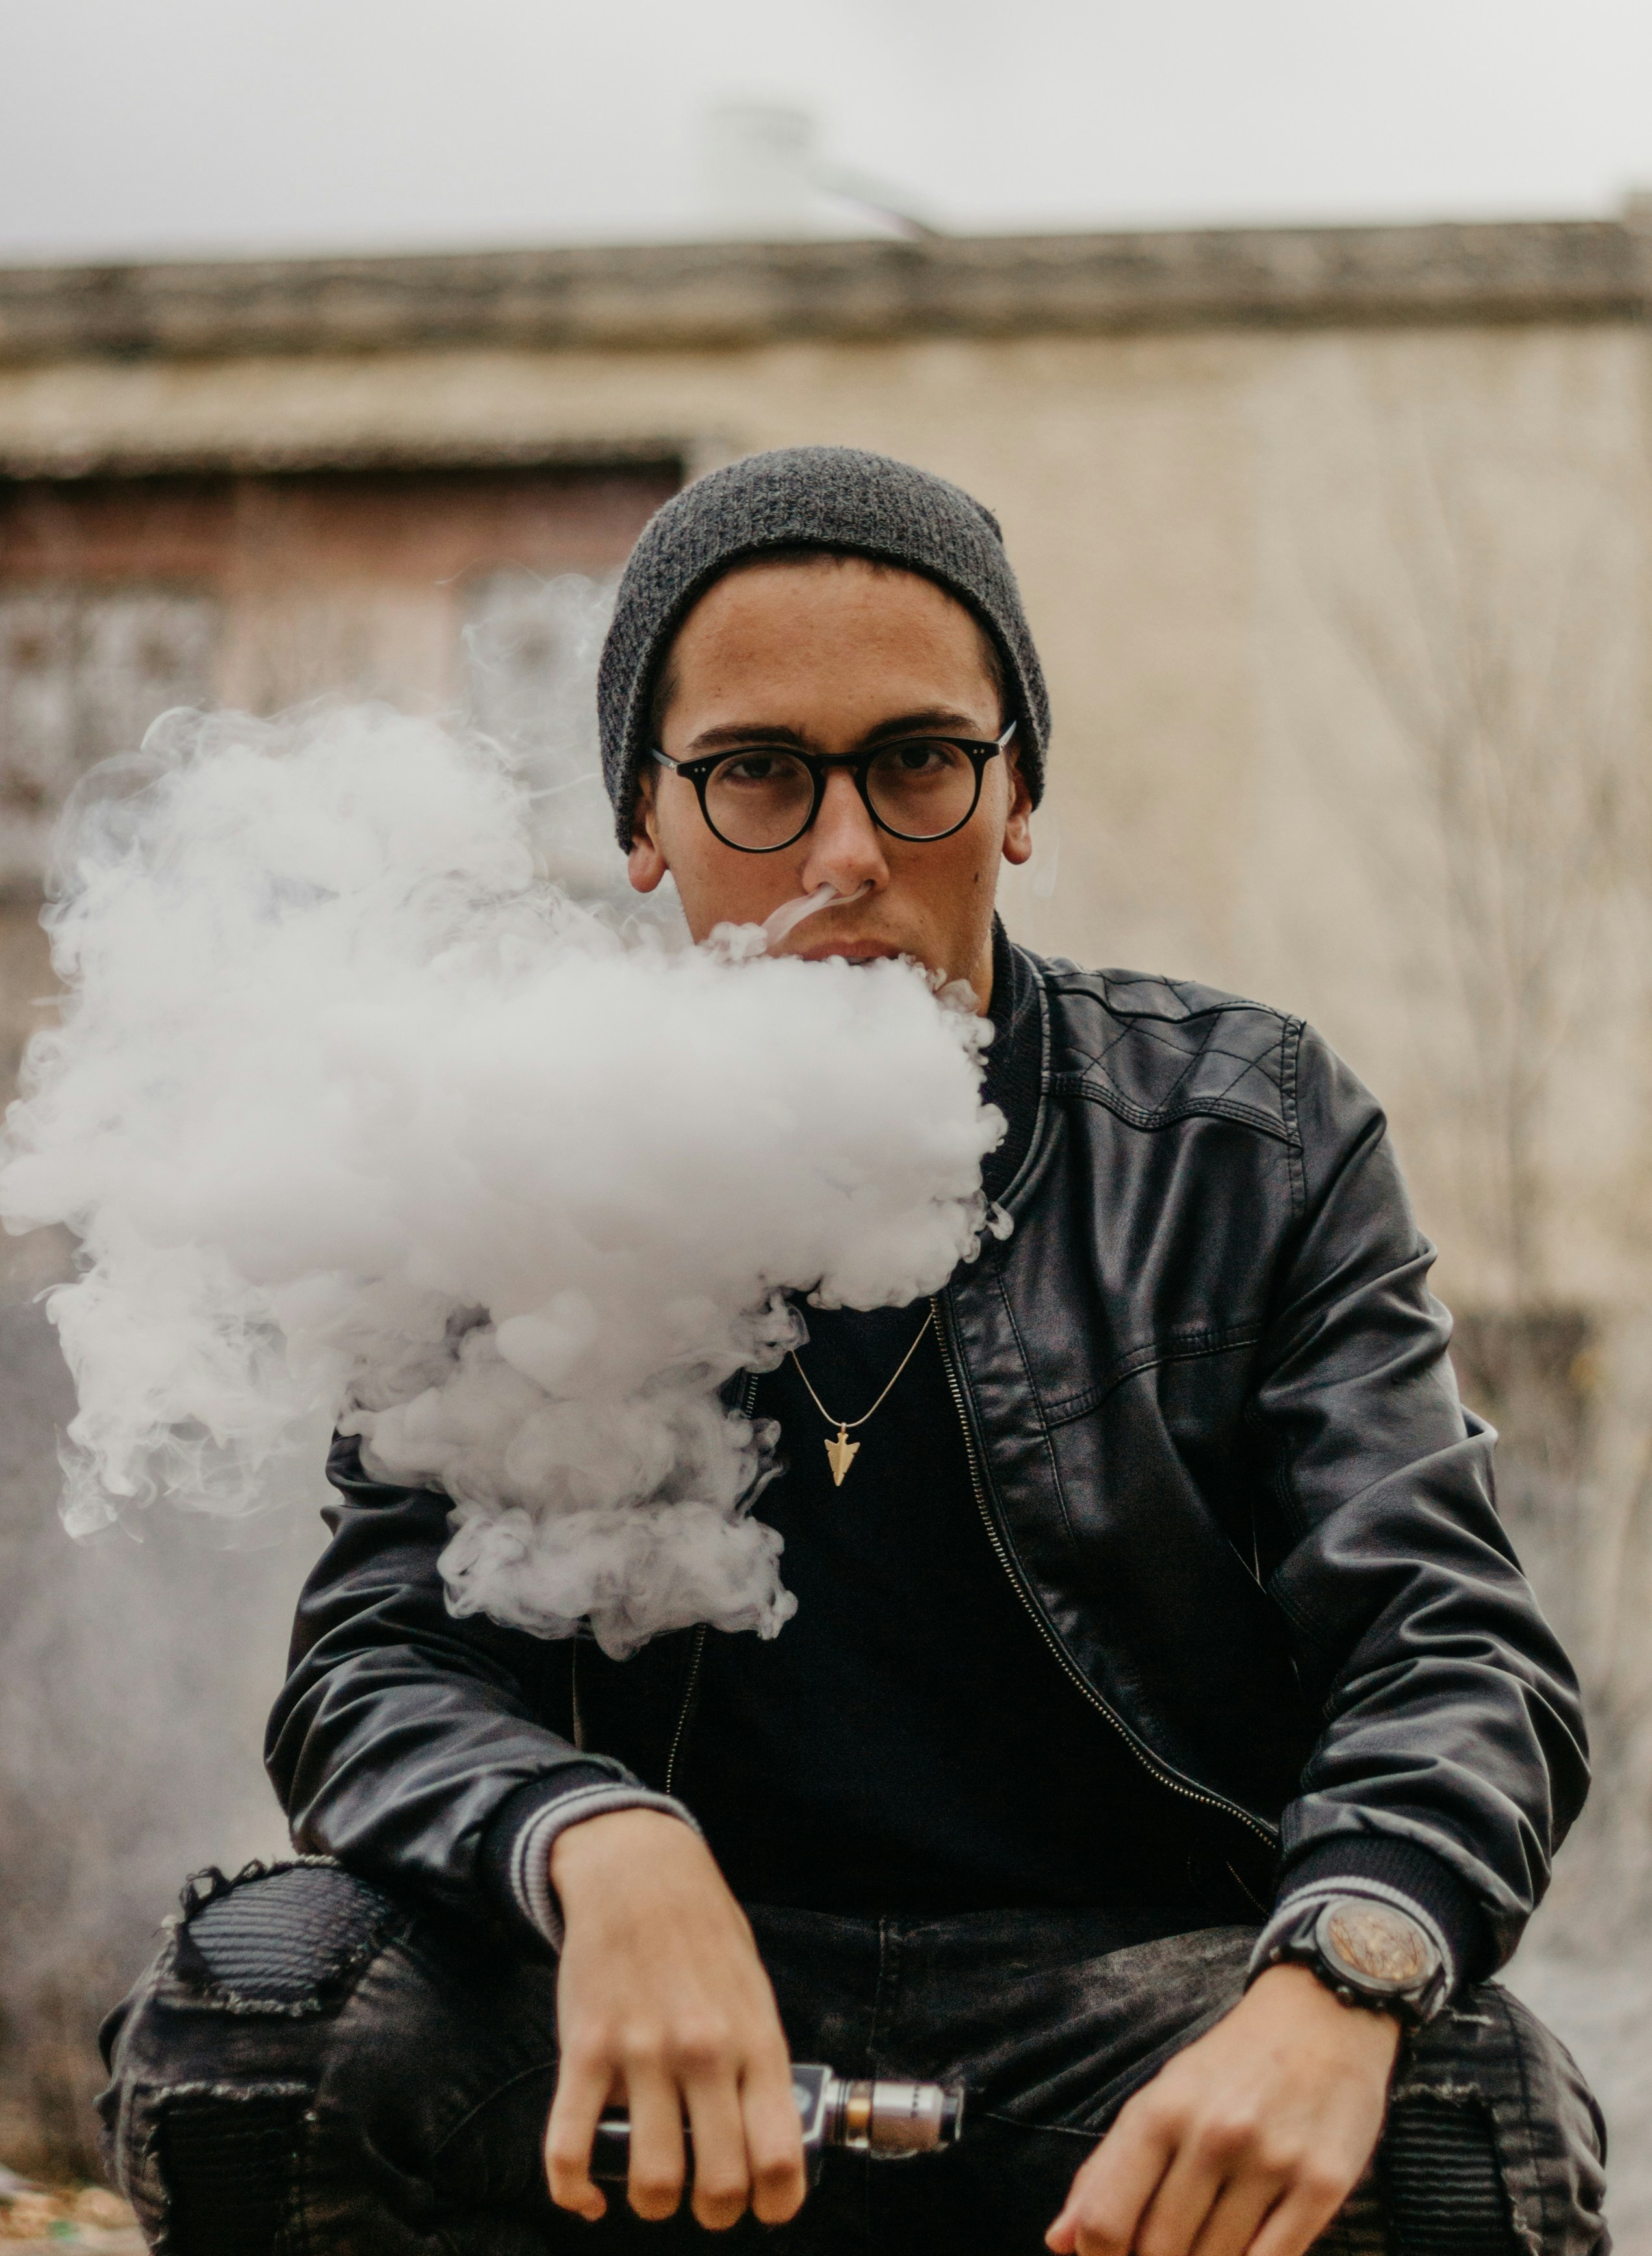 EQ: Si vaporizas/fumas THC, ¿pones en peligro tu vida? 